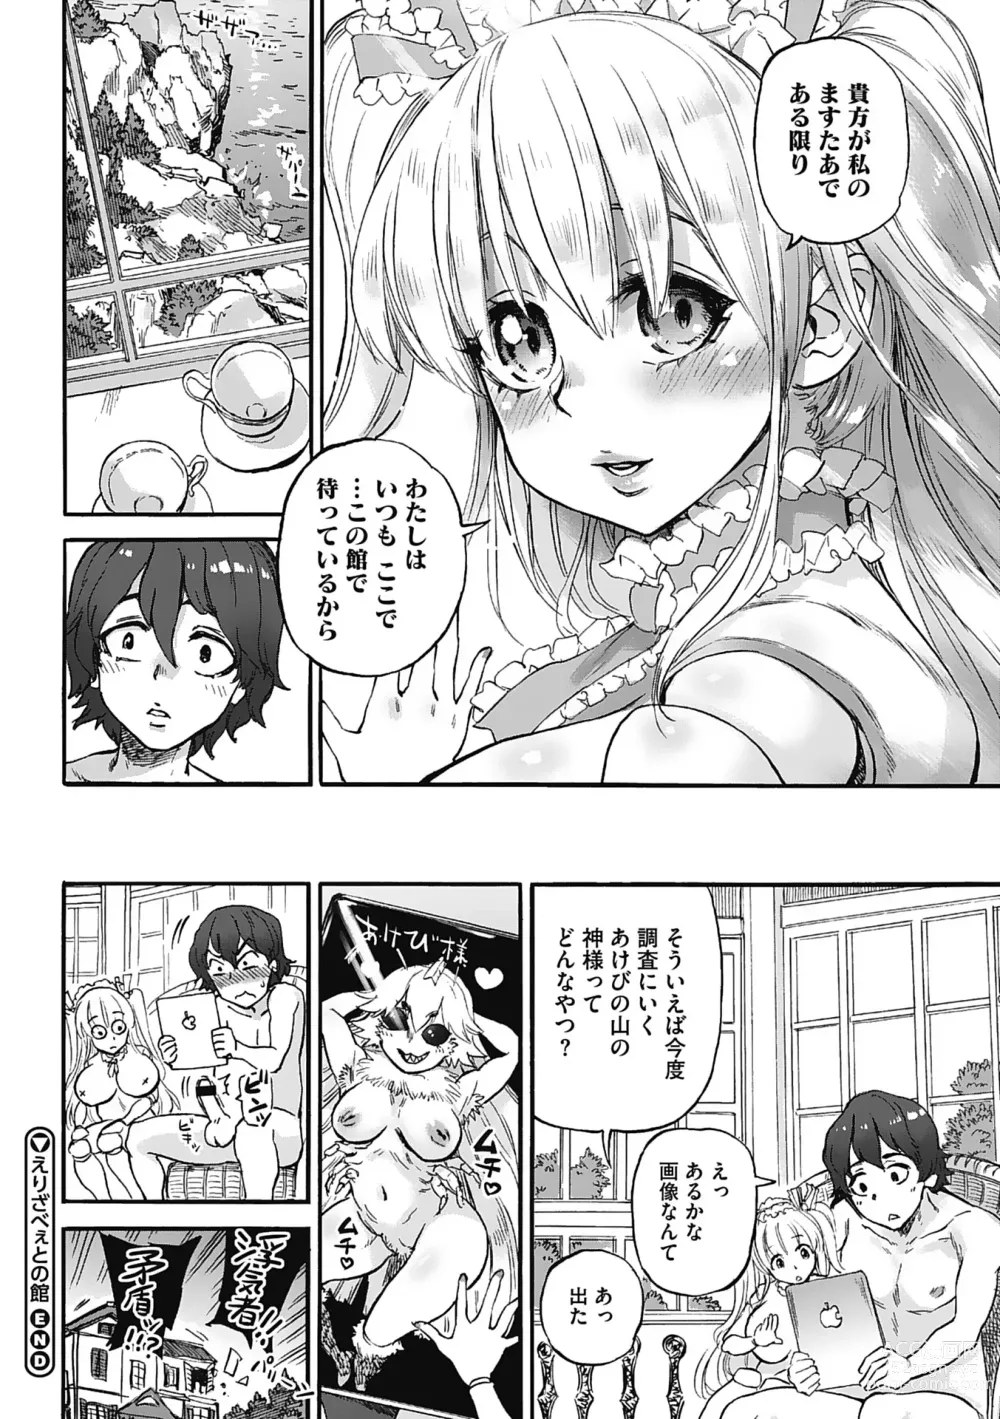 Page 204 of manga Oumagatoki - Ishu Konin Roman Tan -